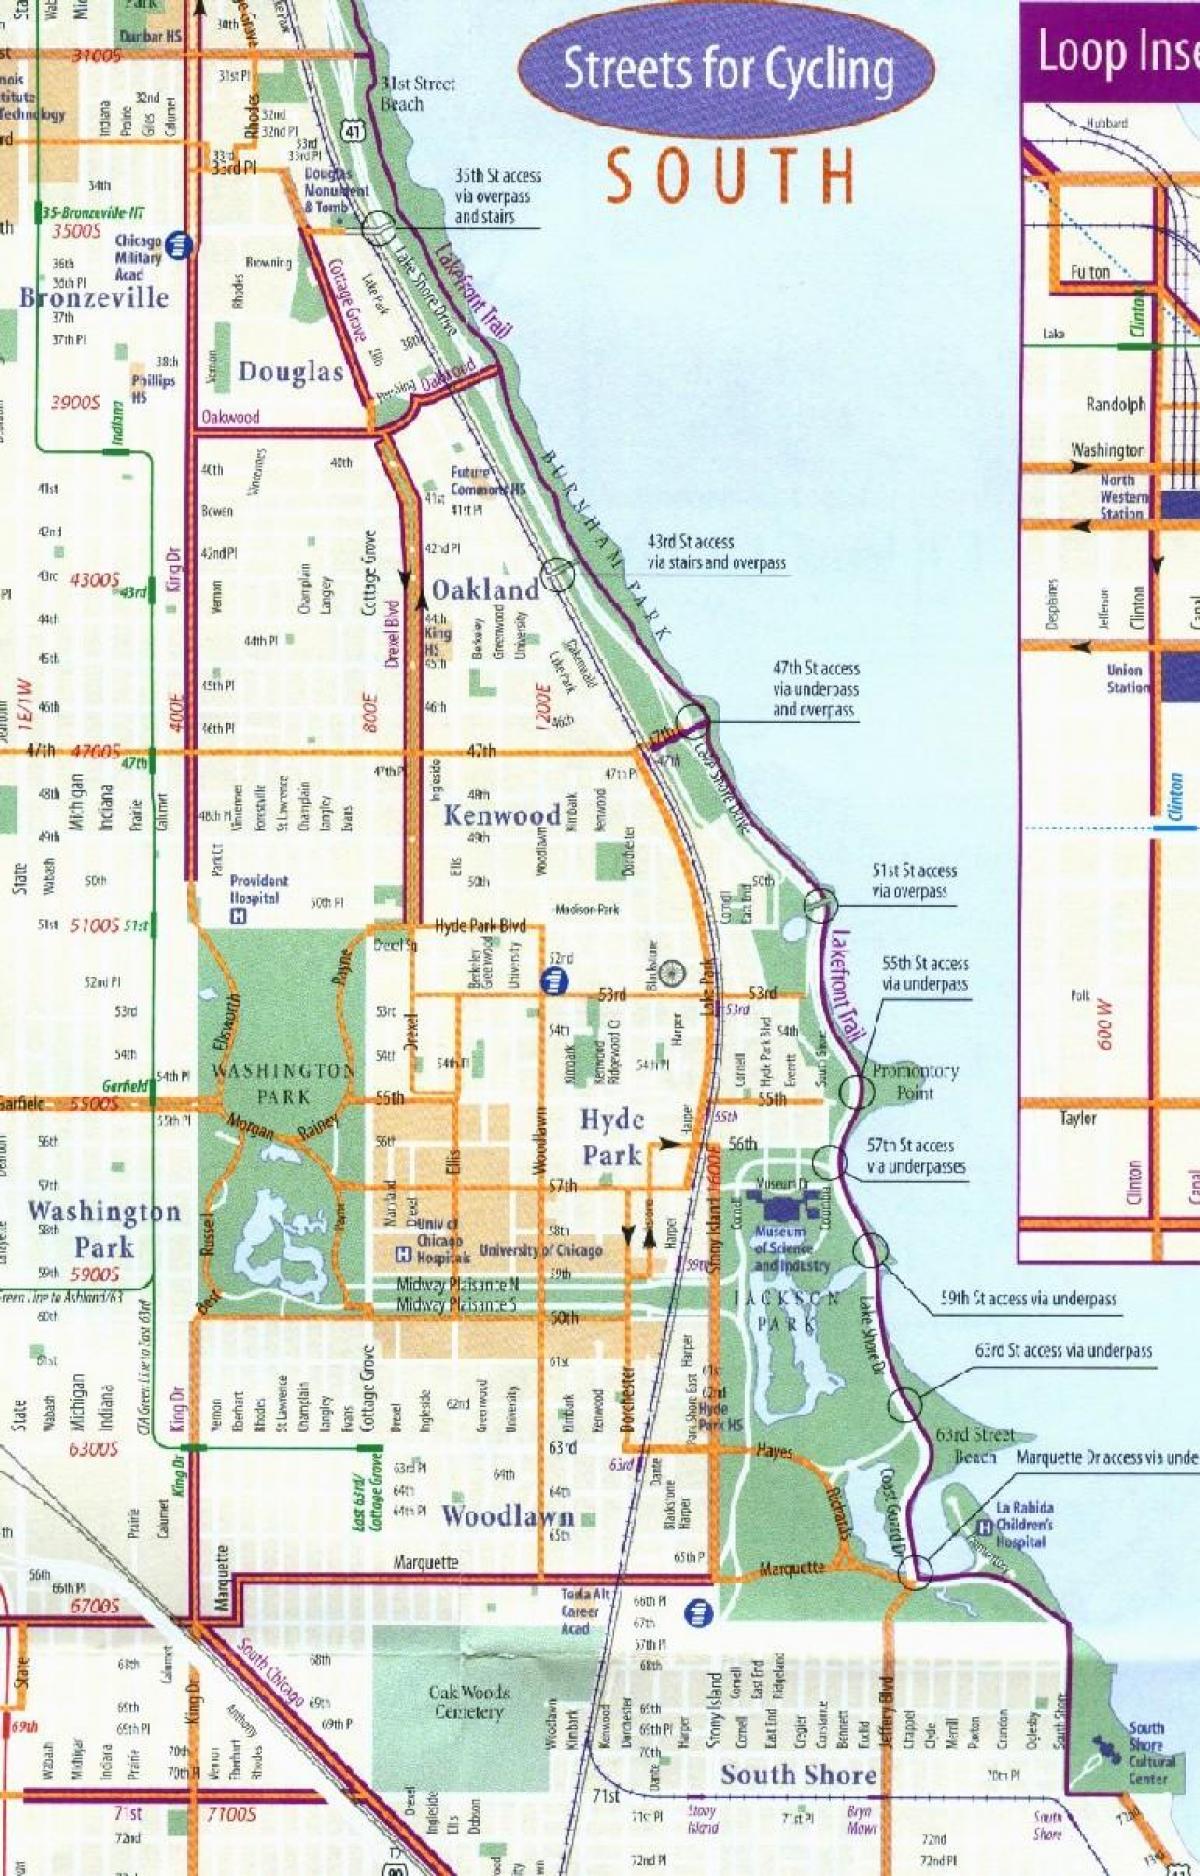 Чикаго дугуйн эгнээ газрын зураг